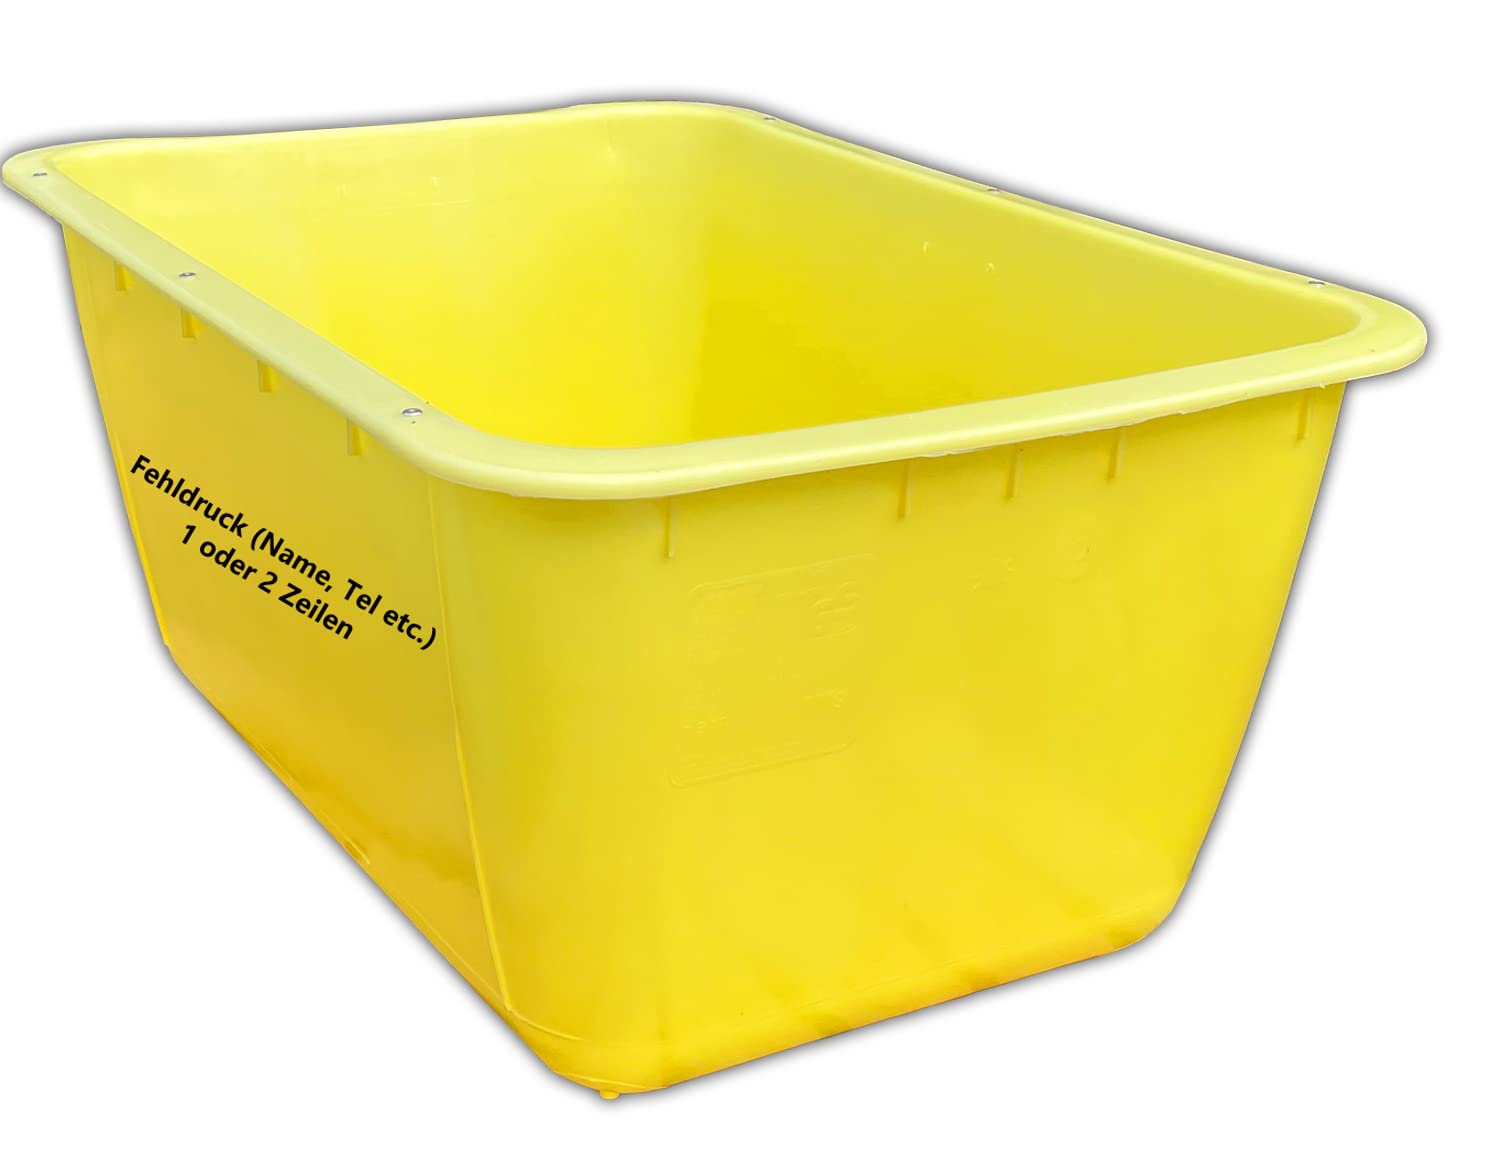 UvV Mörtelkübel gelb 200 Liter 2. Wahl mit Fehldruck Mörtelwanne, Blumenkübel, Wasserbehälter, Futtertrog, Wildwanne, Futterwanne mit 2 Stahlschienen zur Verstärkung (gelb)